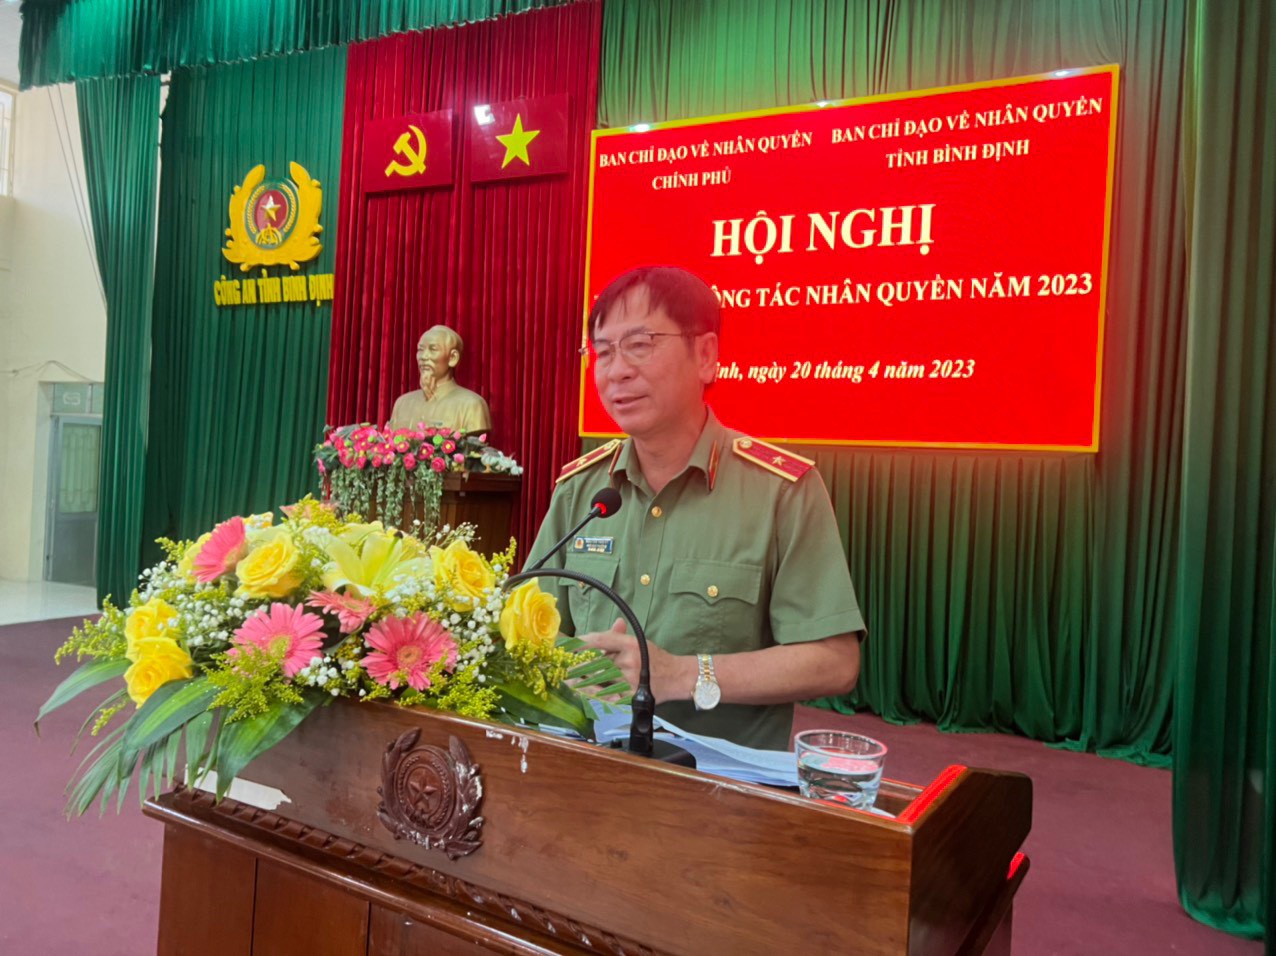 Thiếu tướng Nguyễn Văn Kỷ, Phó Chánh Văn phòng thường trực Ban Chỉ đạo Nhân quyền nhấn mạnh, công tác nhân quyền là trách nhiệm của toàn hệ thống chính trị.